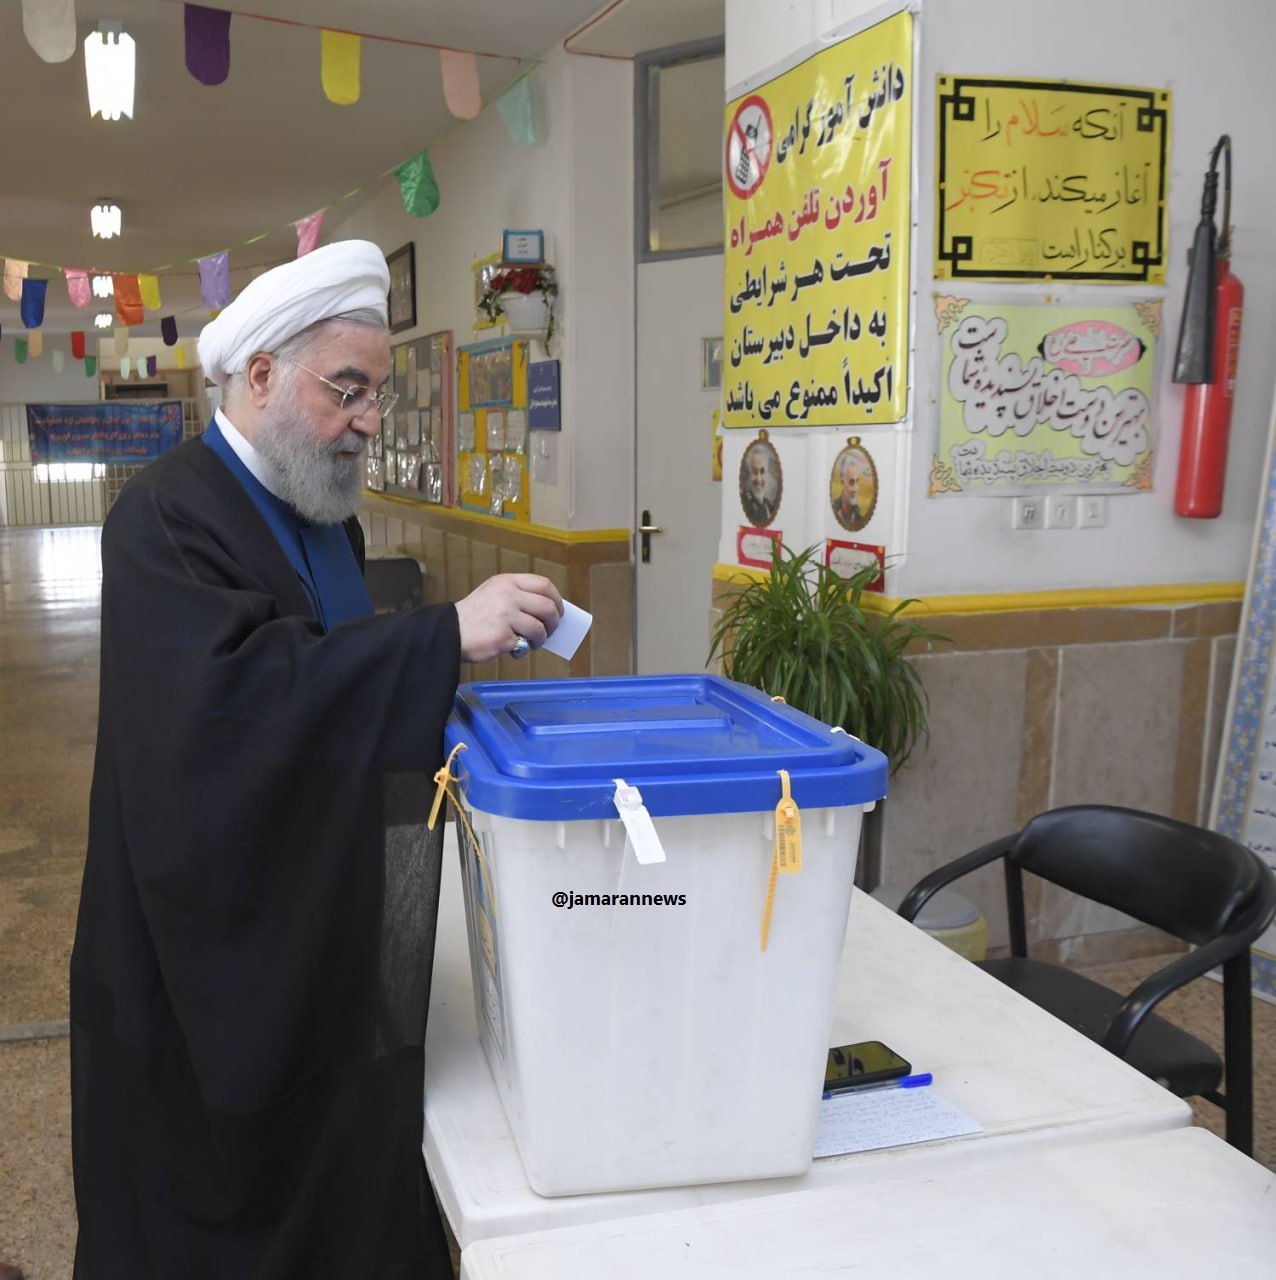 حسن روحانی رأی خود را به صندوق انداخت + عکس 2